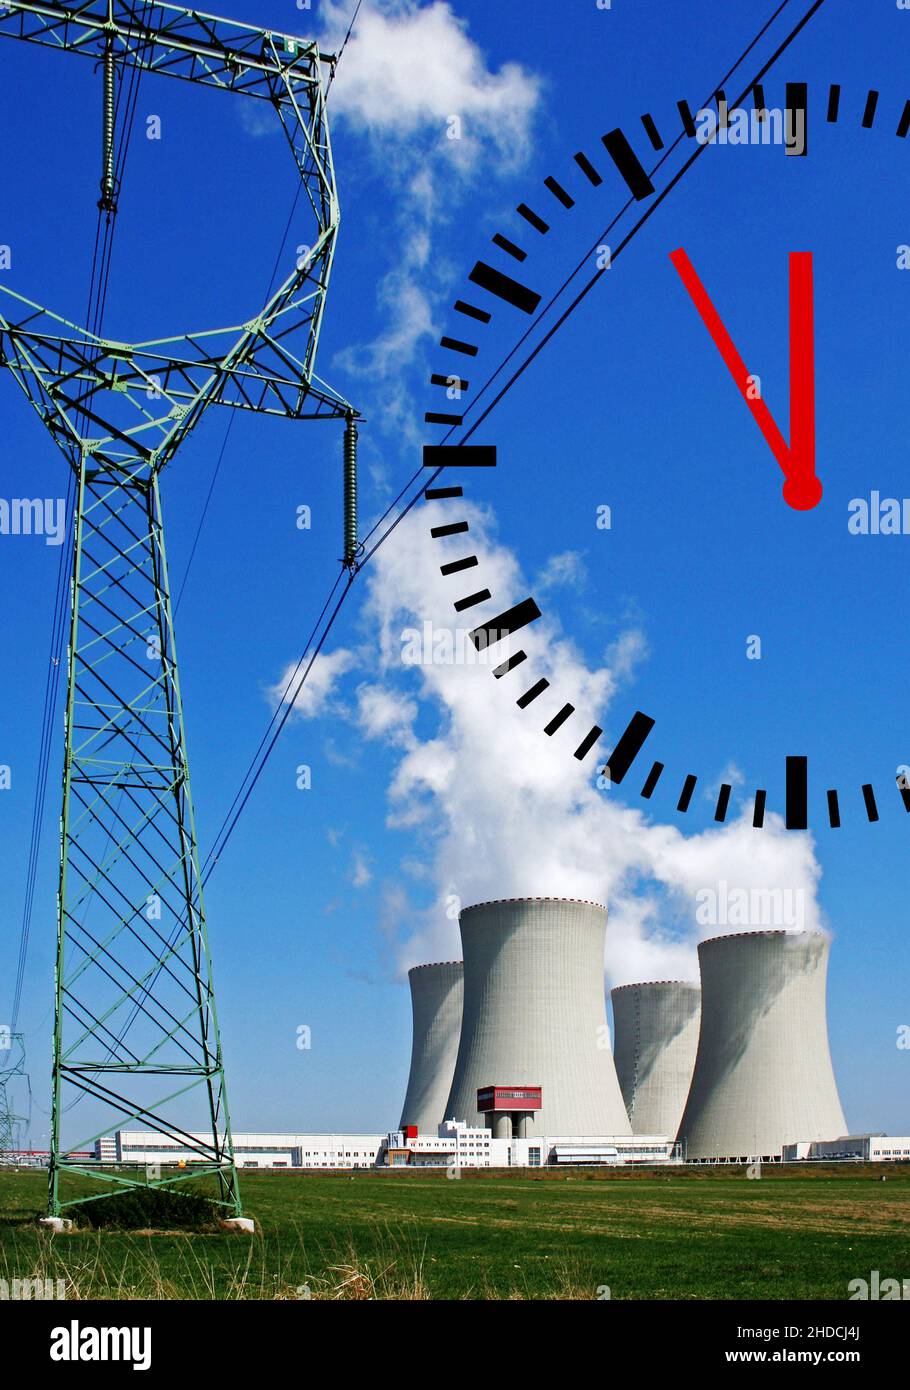 Kraftwerk, CO2-Ausstoss, Klimasteuer, CO2-Steuer, Umweltsteuer, Emissionssteuer, Kernkraftwerk, Uhr zeigt 5 vor 12, Klimawandel, Stock Photo